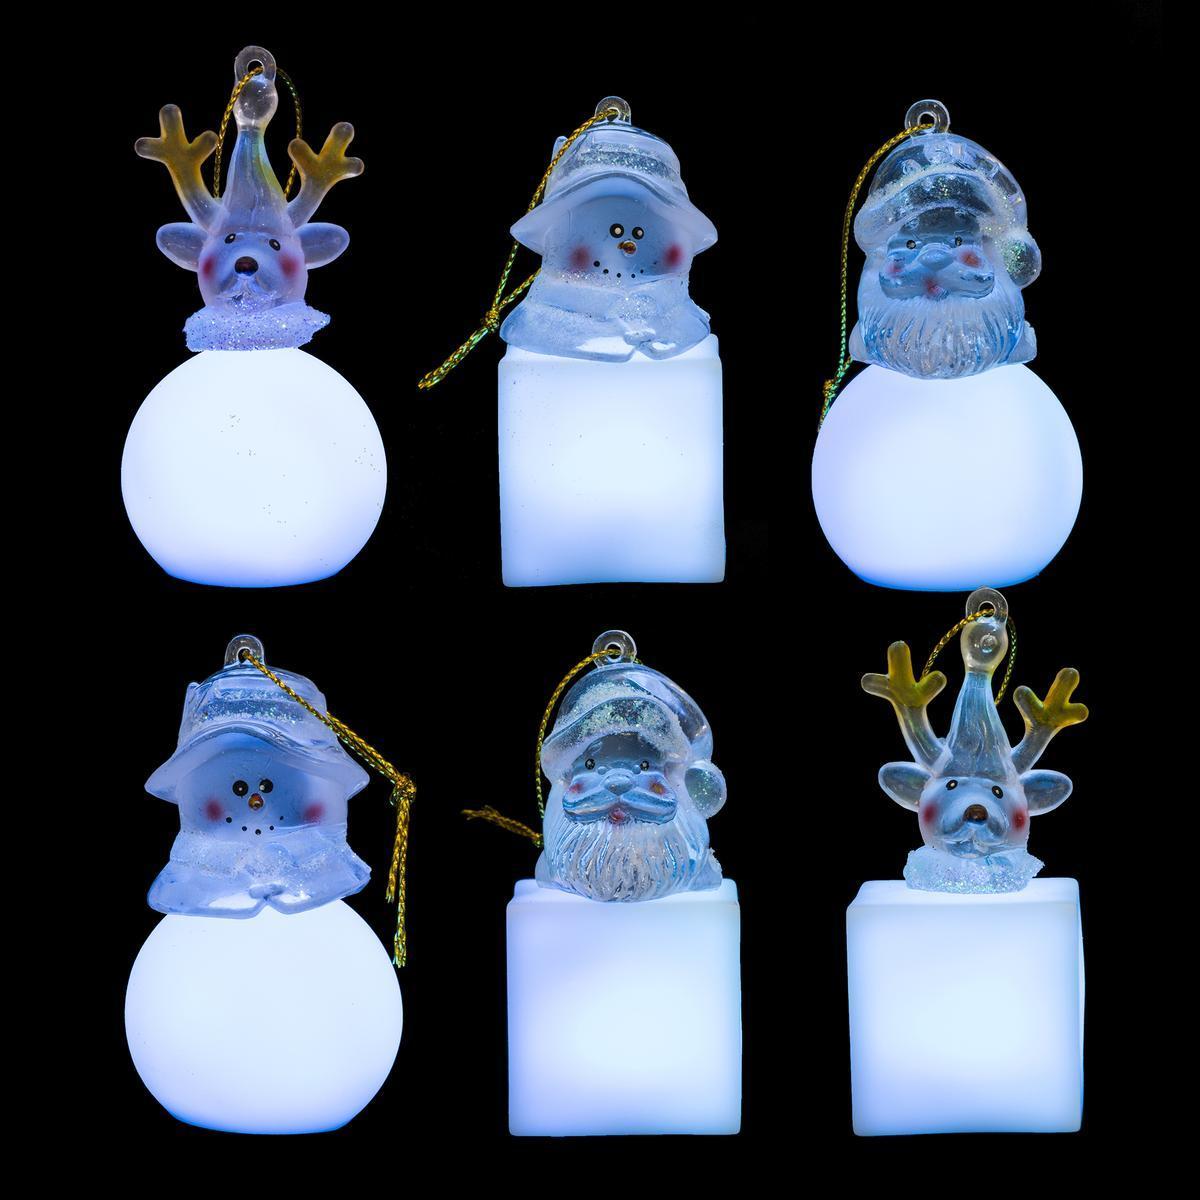 Suspension figurine LED - Electrique - H 7,5 cm - Blanc